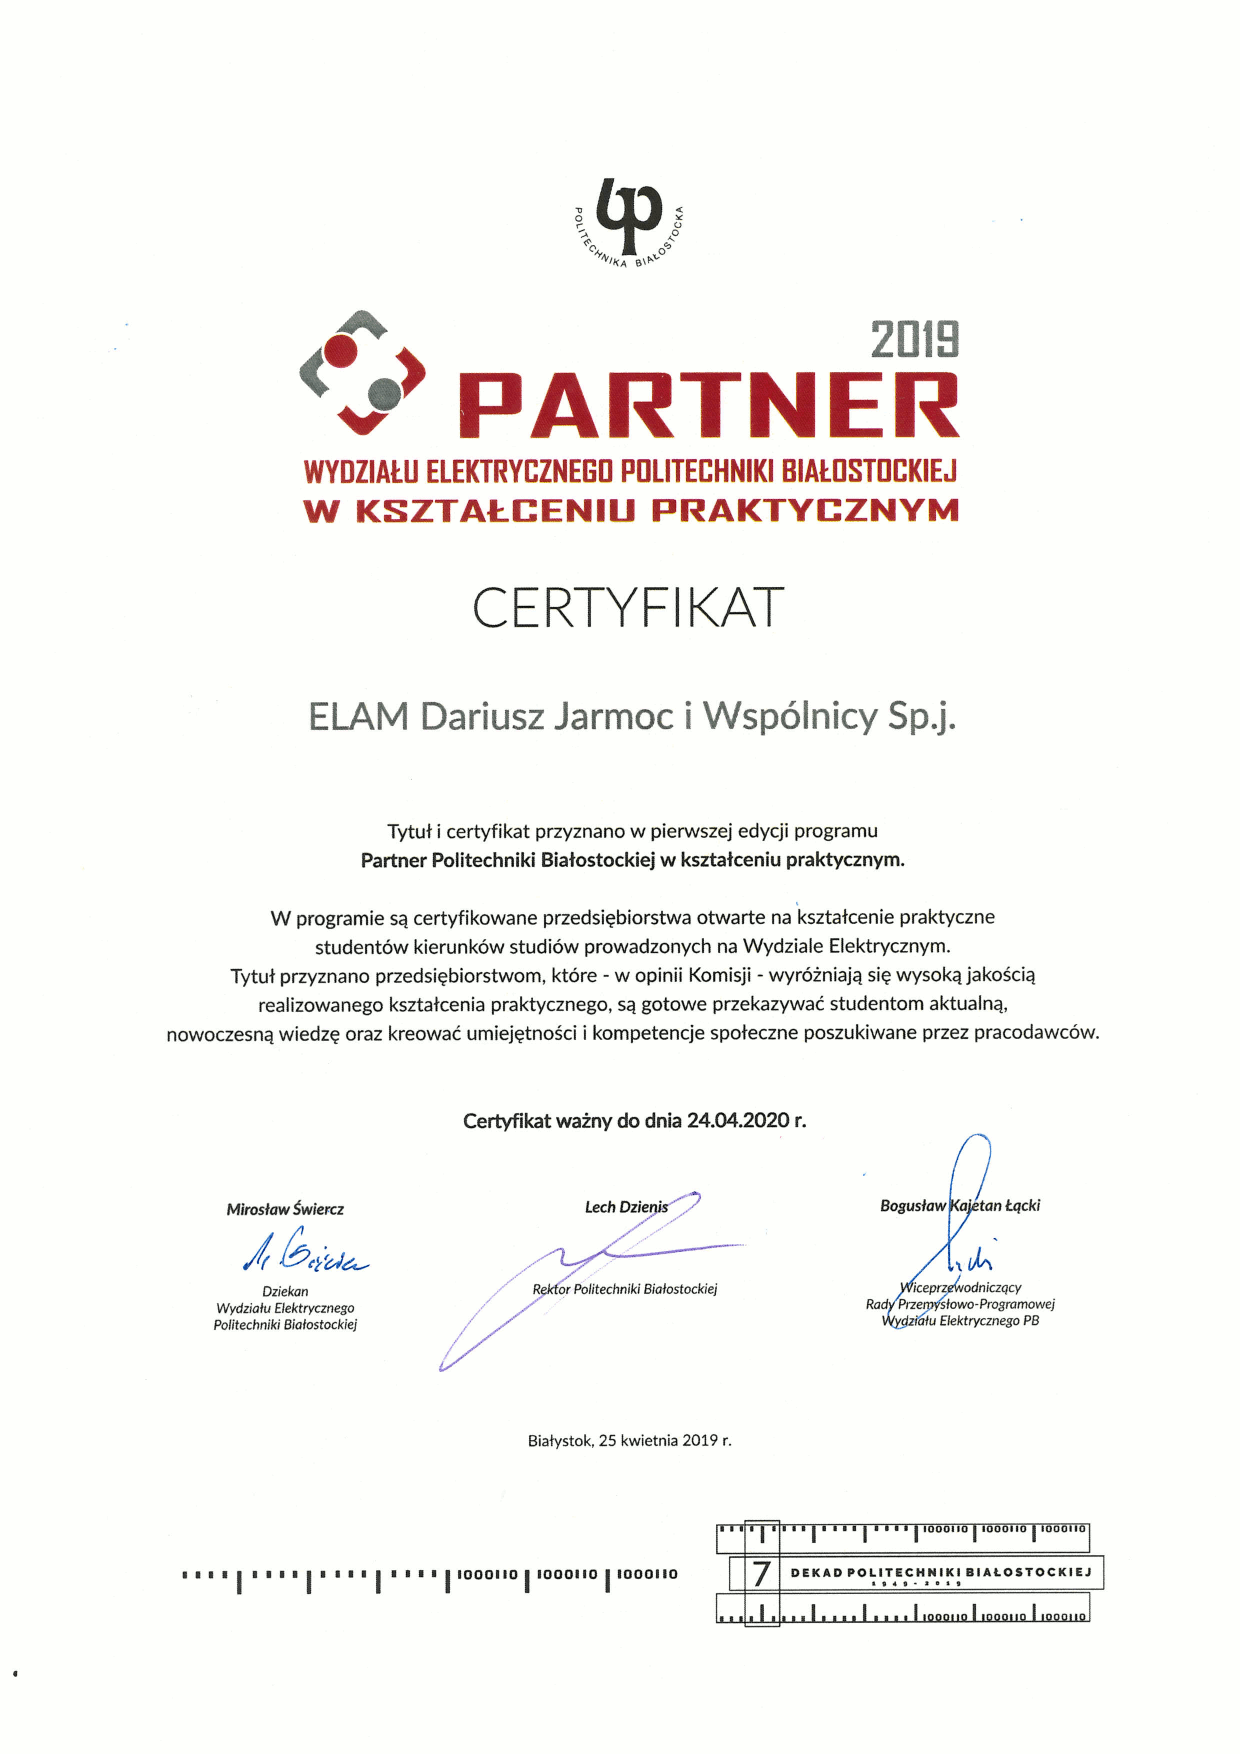 Certyfikat Partnera w kształceniu praktycznym - ELAM sp.j.